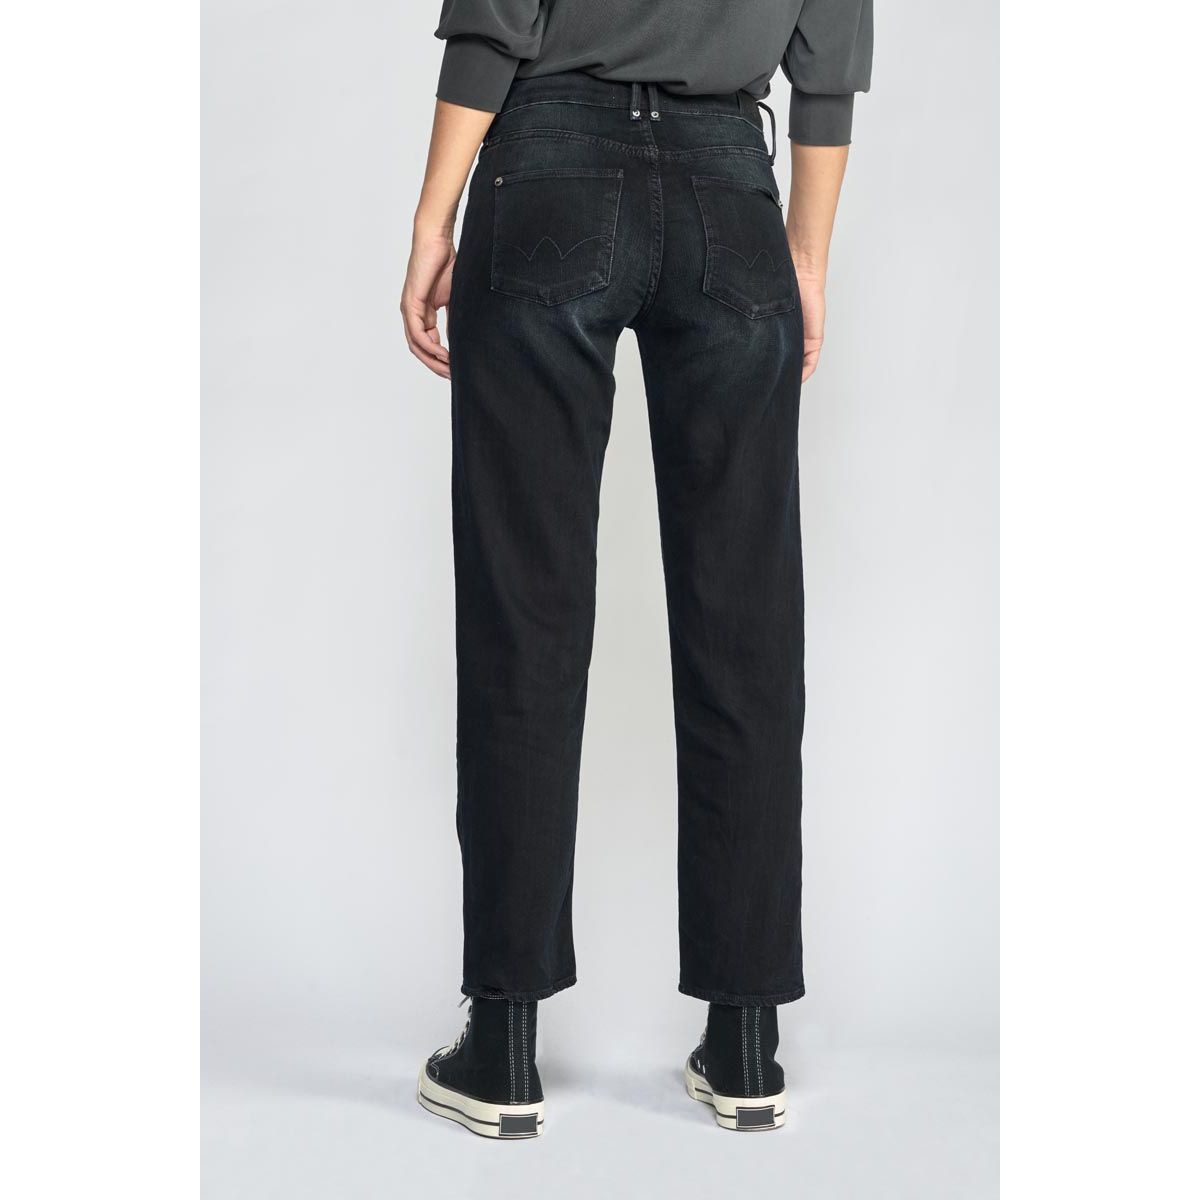 La Redoute Femme Vêtements Pantalons & Jeans Jeans Boyfriend Basic 400/18 mom taille haute 7/8ème jeans 